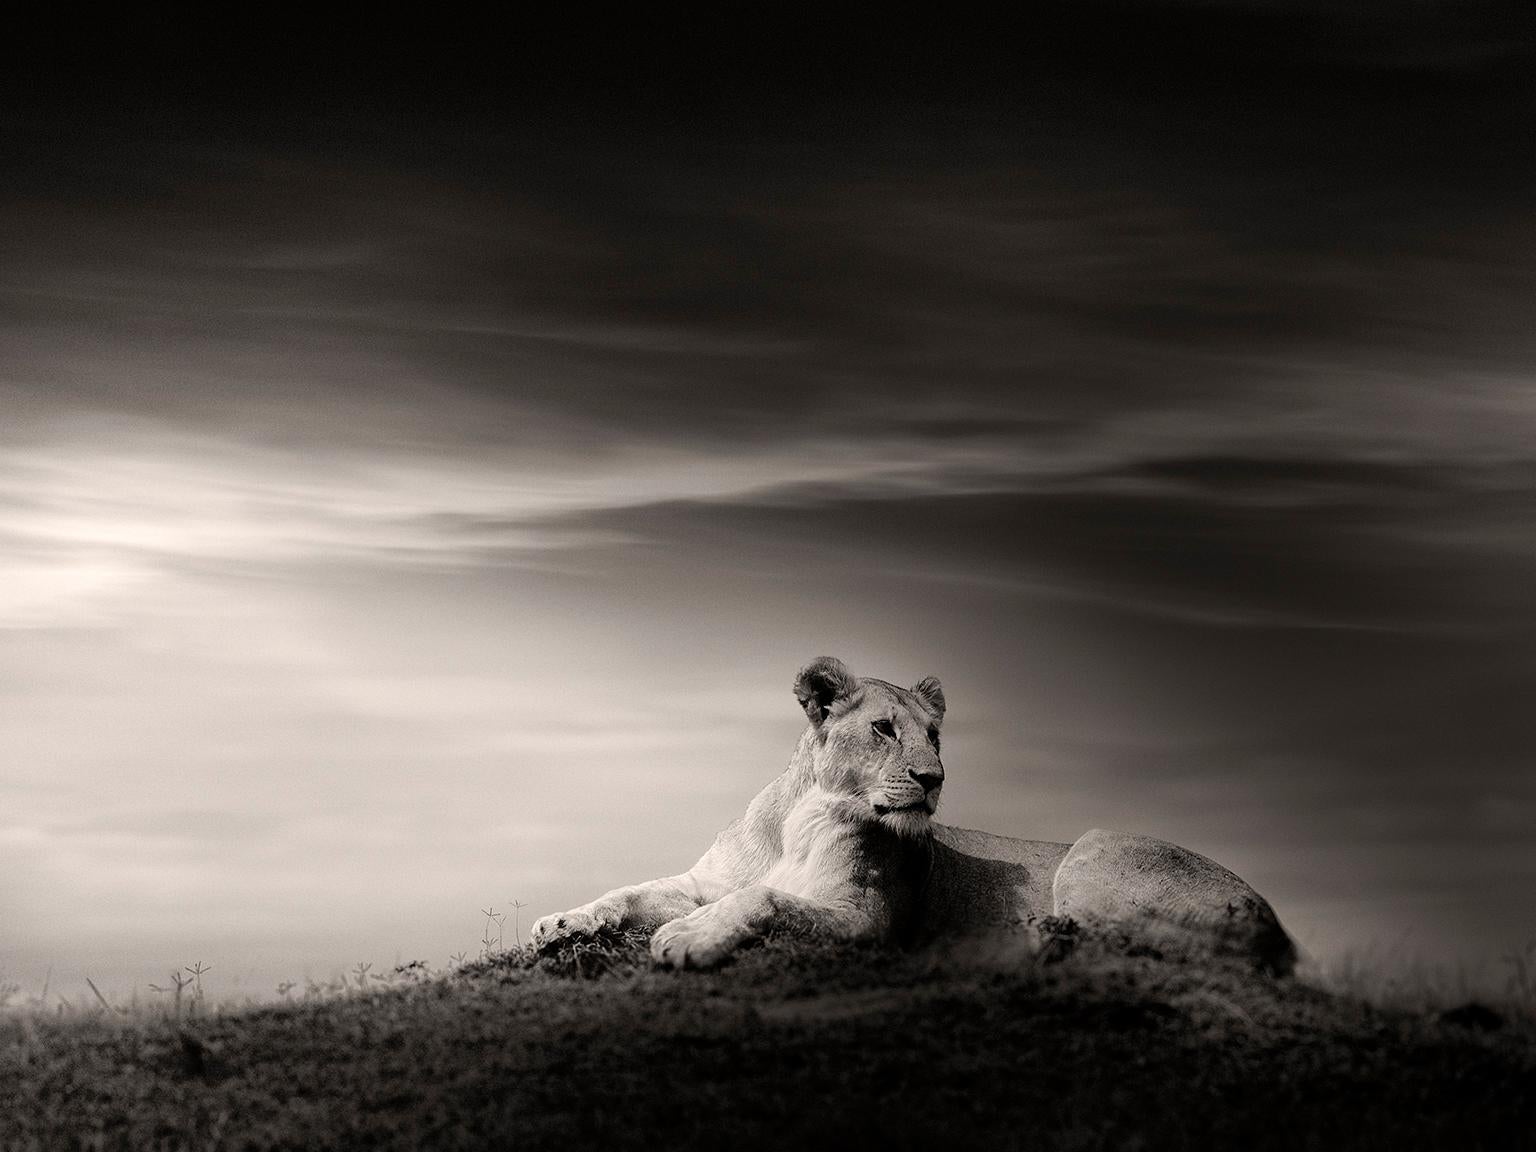 Die Löwe, Schwarz-Weiß-Fotografie, Afrika, Porträt, Tierwelt